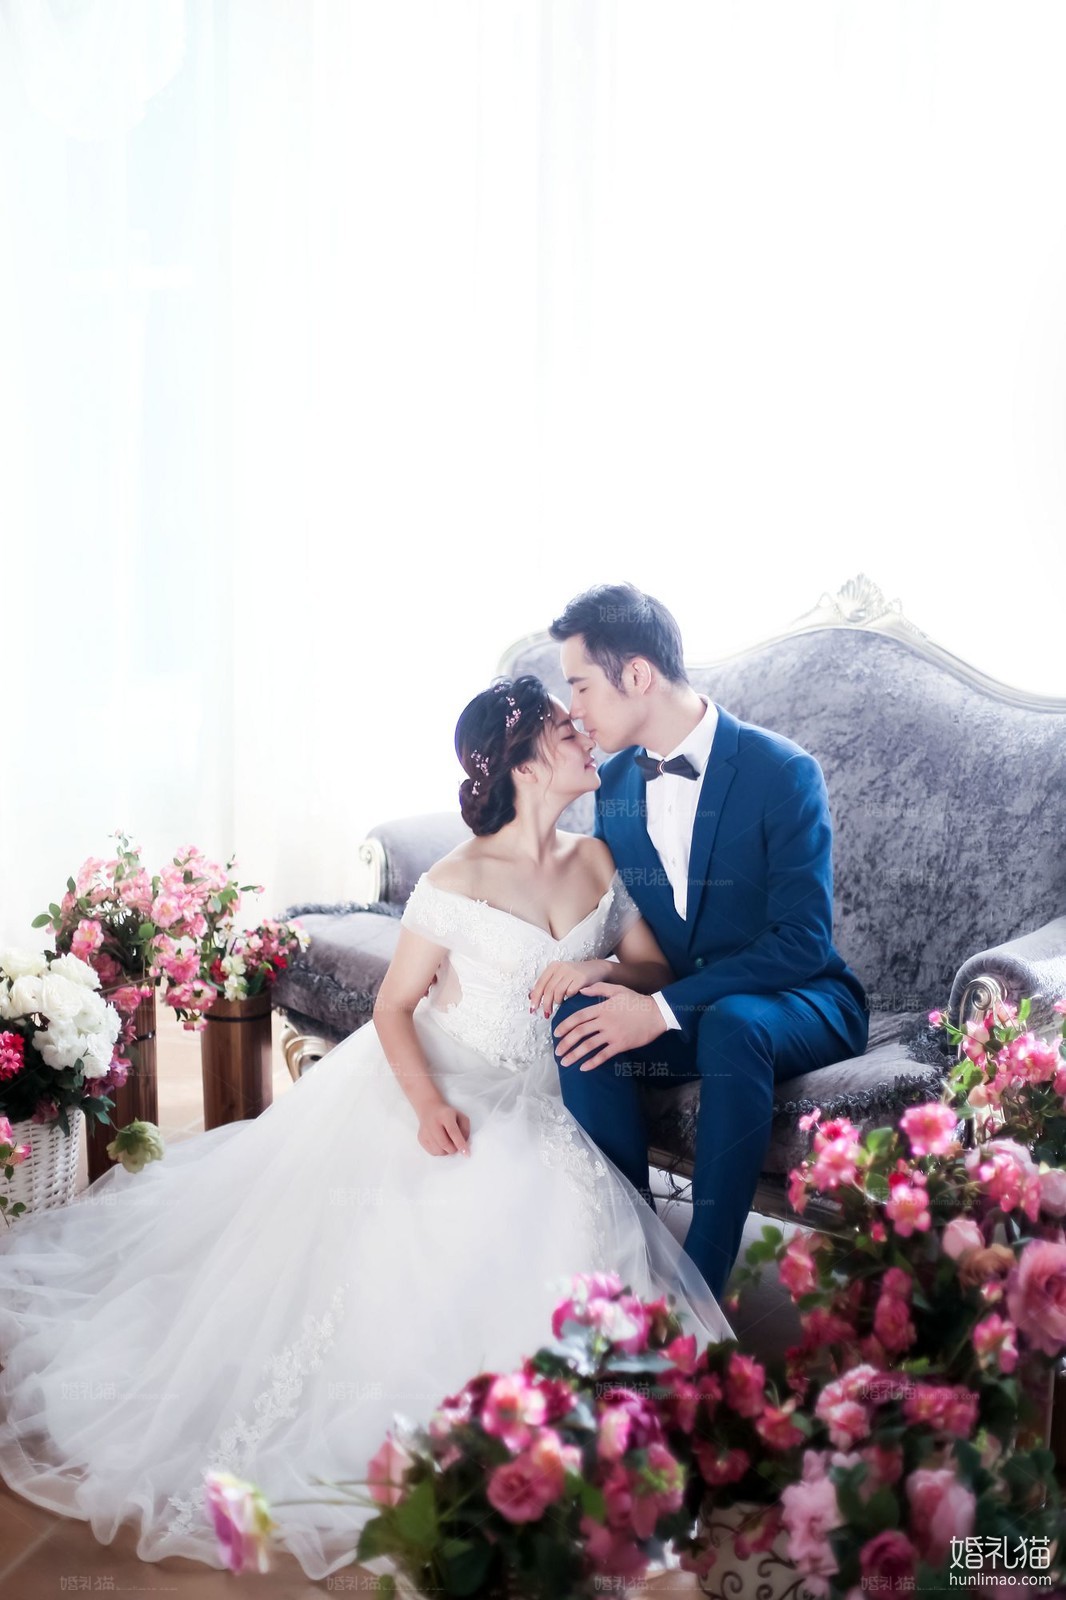 2017年10月上海结婚照,,上海婚纱照,婚纱照图片